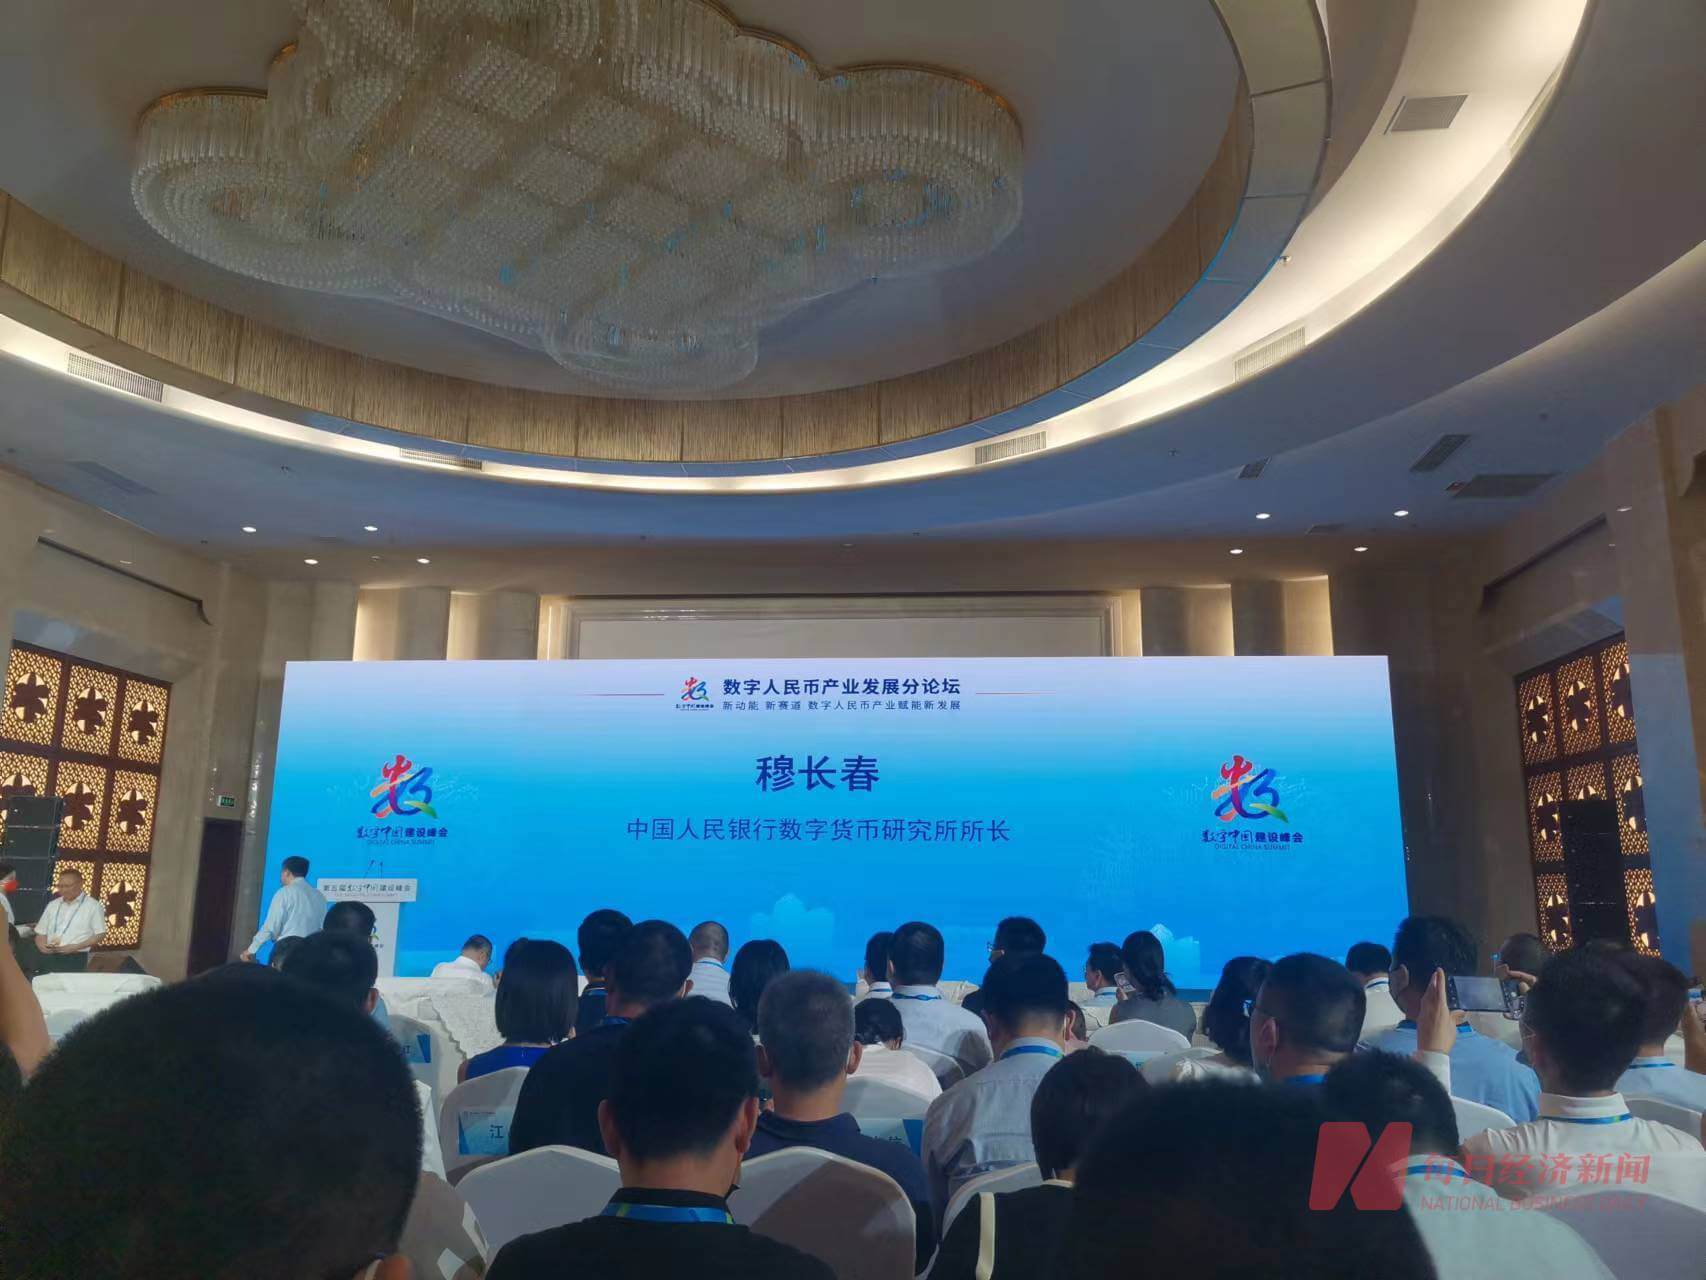 Может ли цена Биткоина вырасти? Фото с саммита Digital China Construction в Китае. Фото.